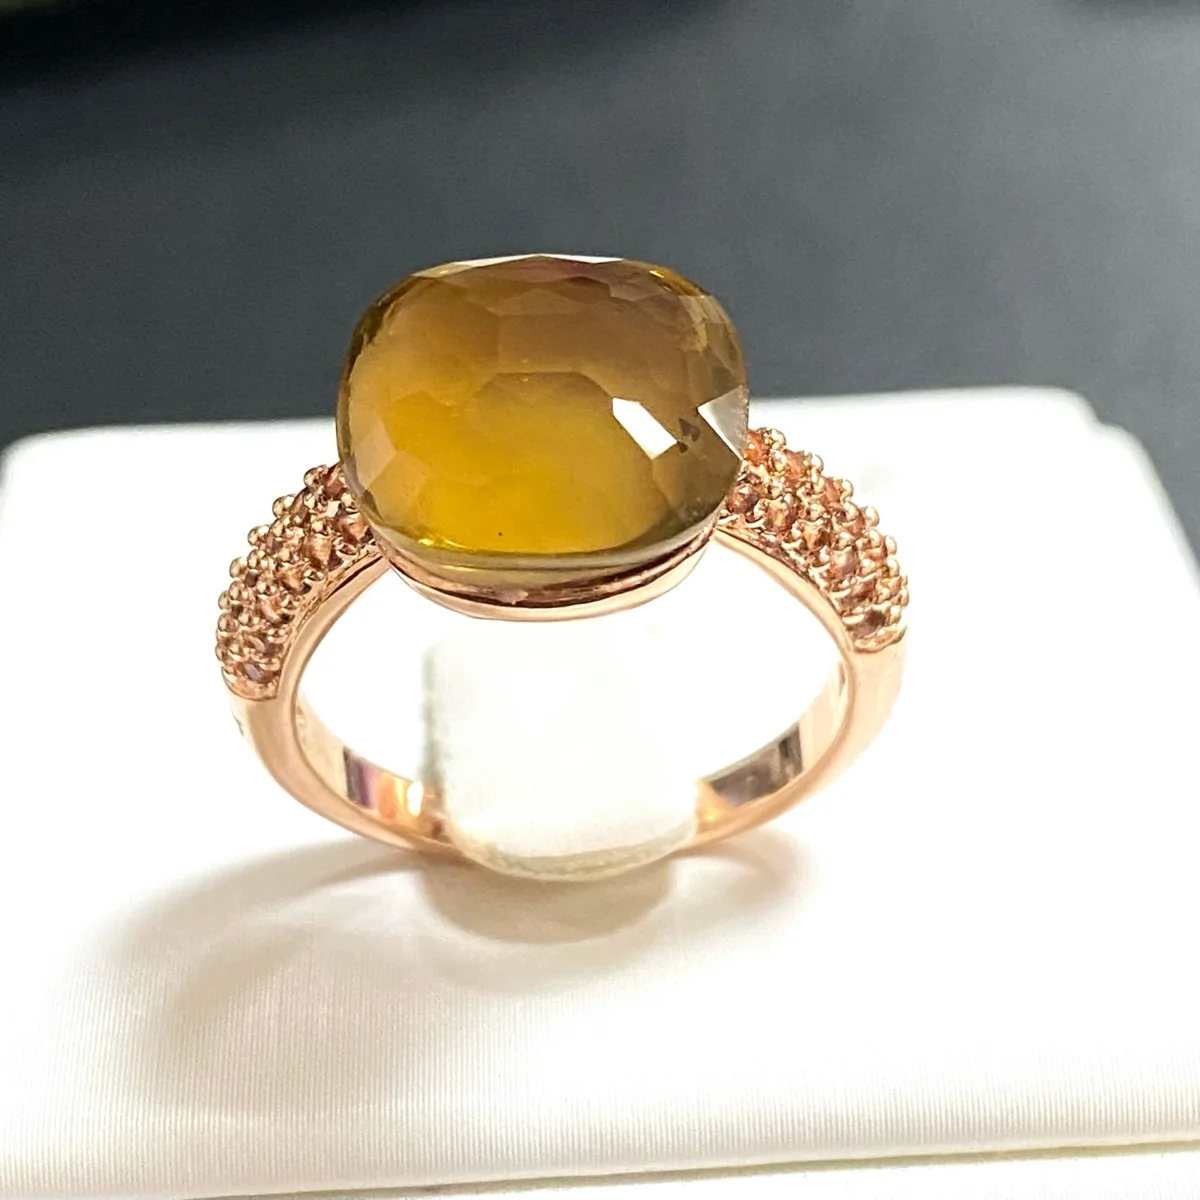 

Кольцо Pomellato 12,6 мм с инкрустацией из коричневого циркона, женское плоское кольцо с кристаллом конфетного цвета, покрытое розовым золотом, би...